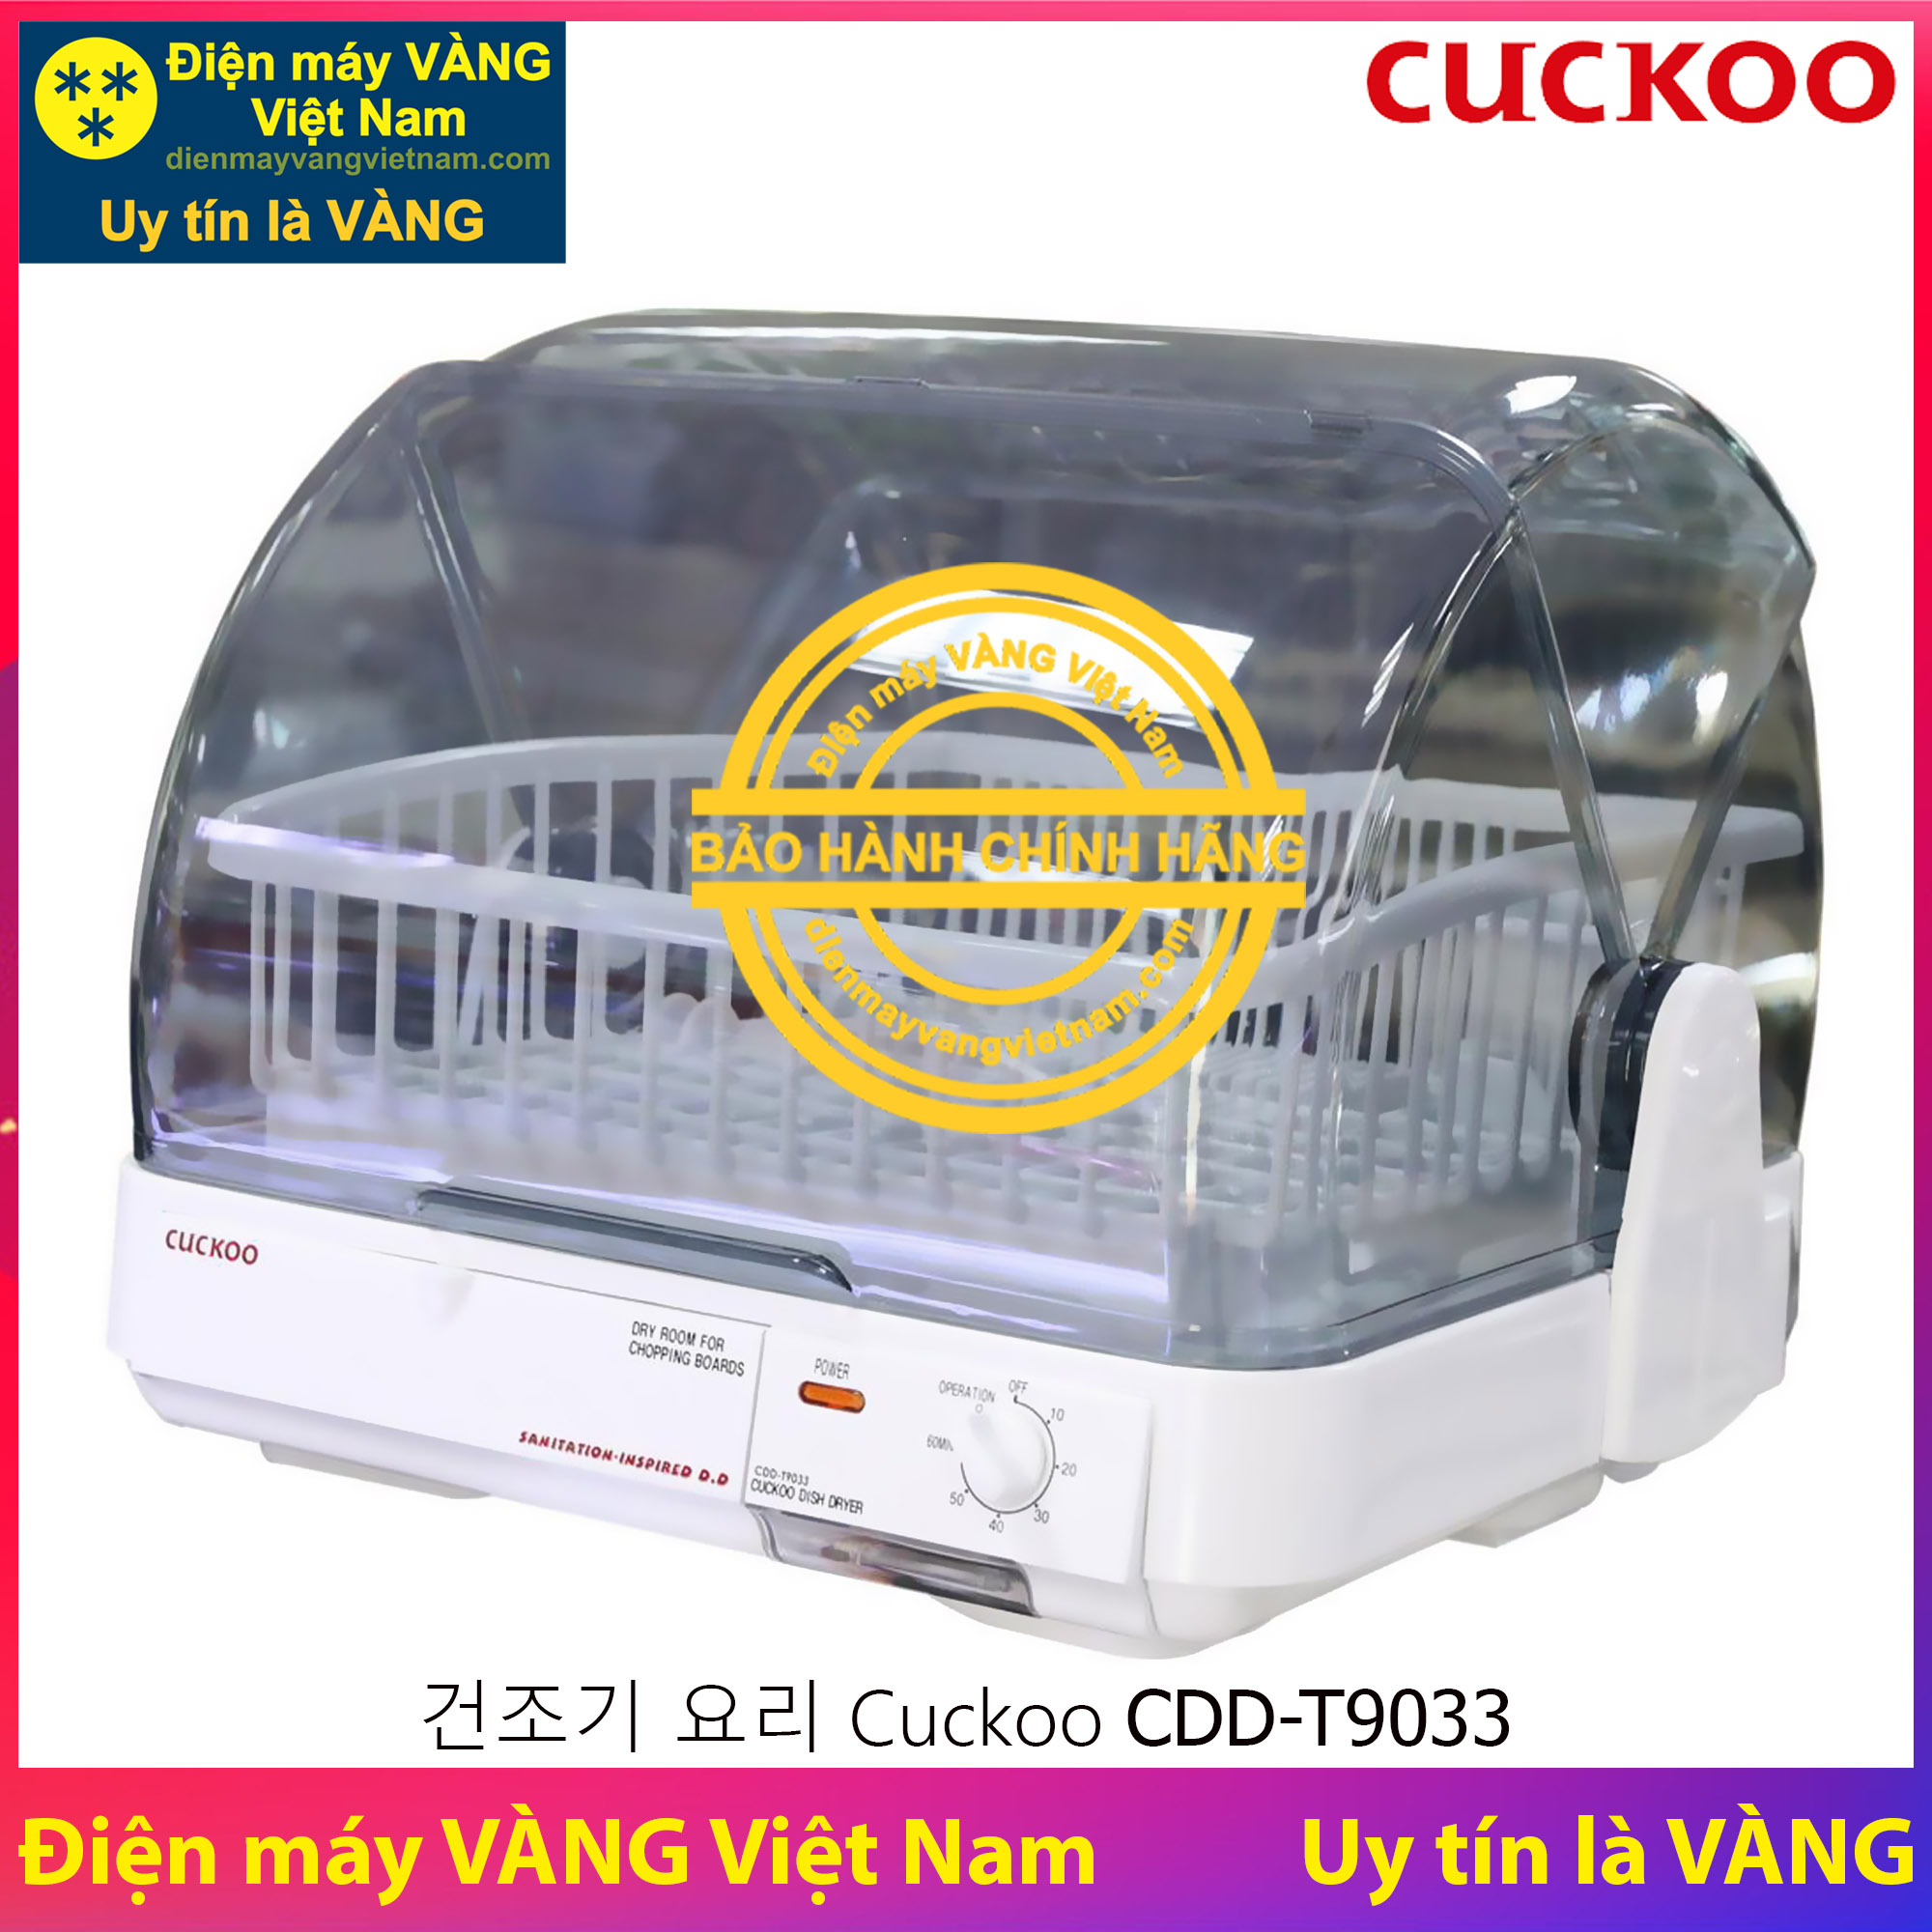 Máy sấy bát chén gia đình Cuckoo CDD-T9033